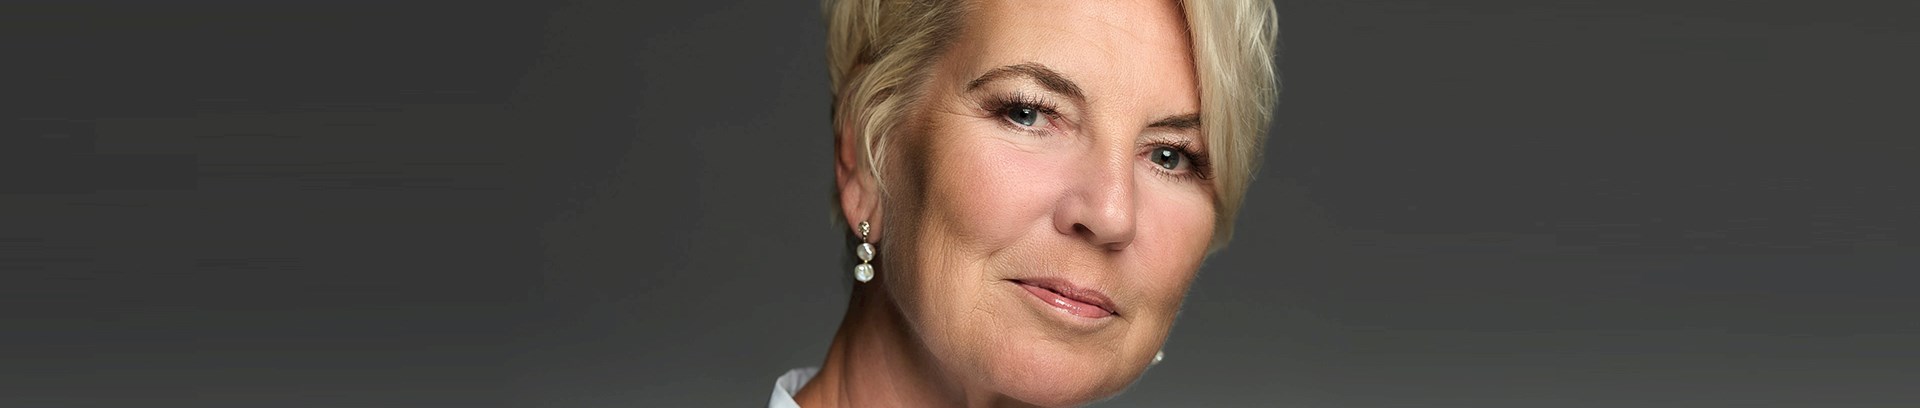 Pia Søltoft, præst og forfatter til adskillige bøger om Søren Kierkegaard og medforfatter på ’Kunsten at blive et ordentlig menneske’ fra 2021.